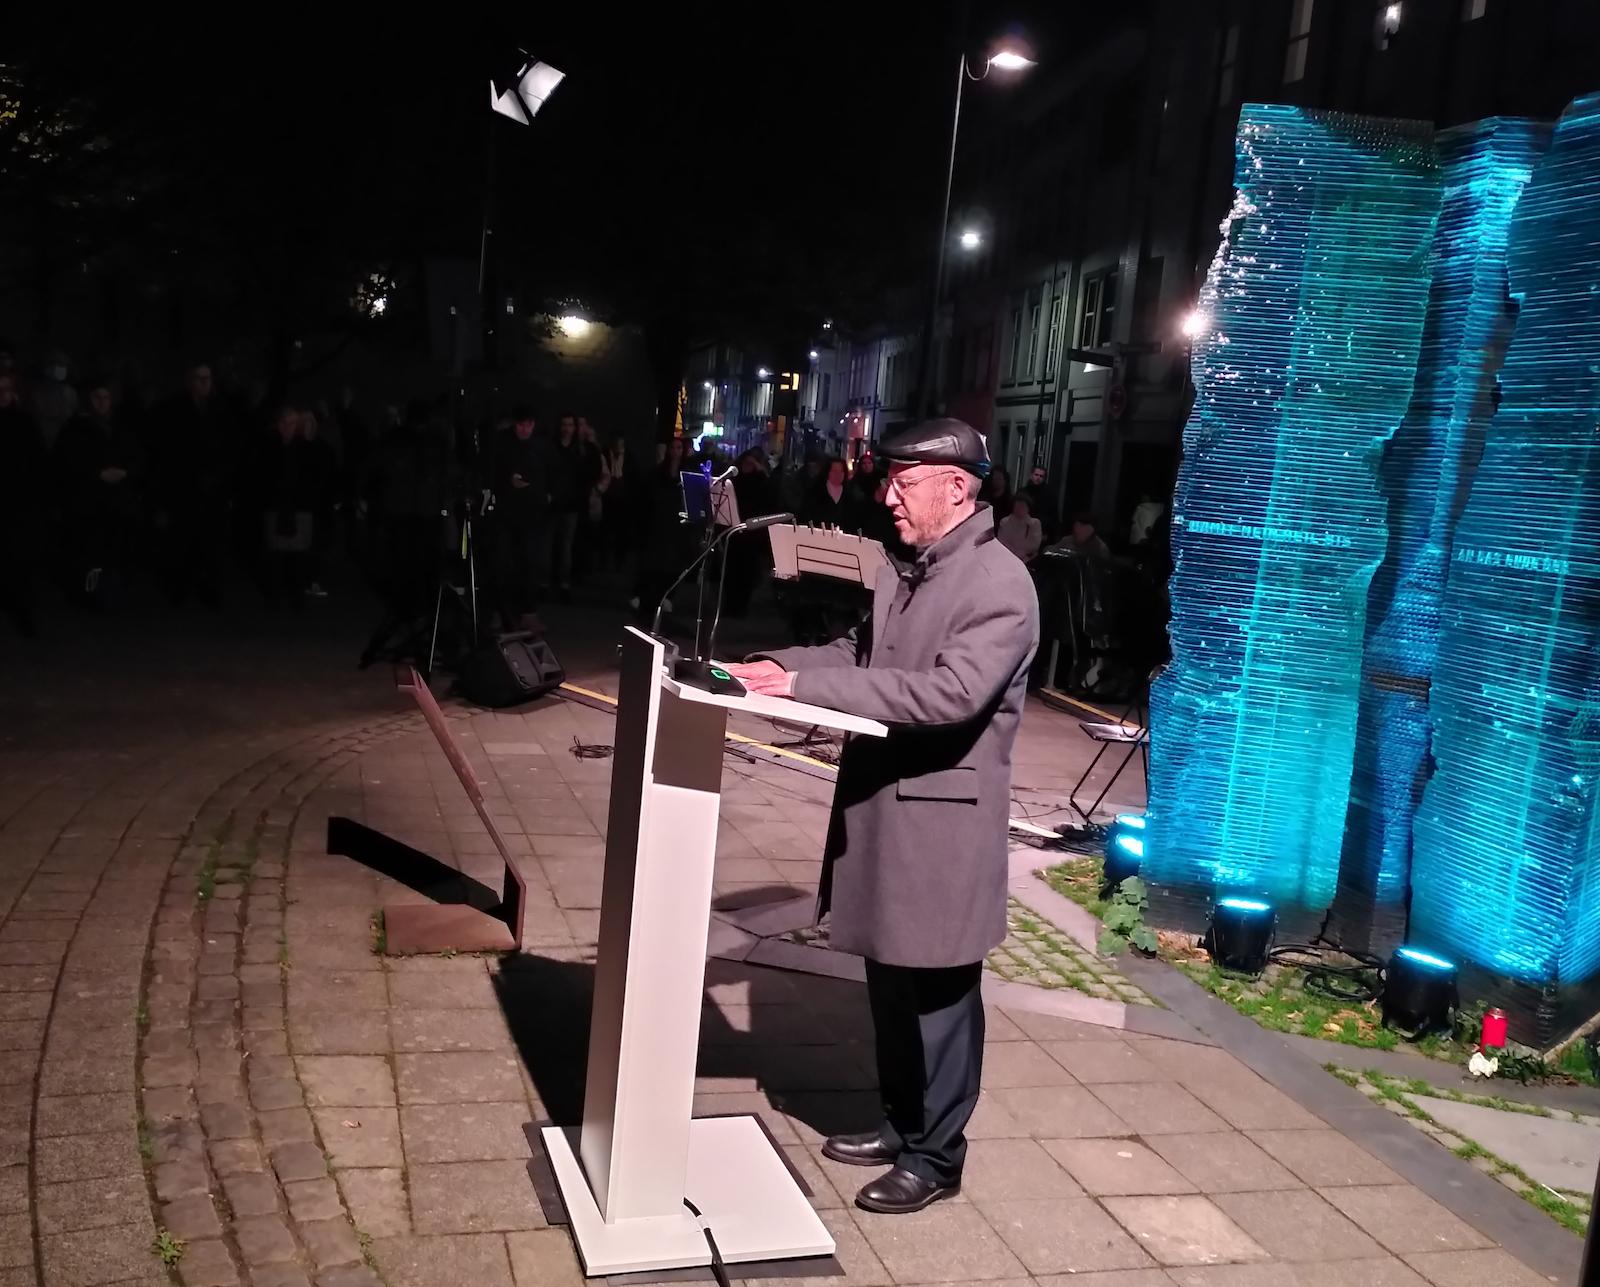 Gedenkfeier zur Pogromnacht am 9. November vor der Aachener Synagoge. Der Rabbiner der Aachener Gemeinde Michael Jedwabny spricht das Totengebet. Schülerinnen und Schüler des Einhardgymnasiums stellten zu den Ereignissen aktuelle Bezüge her.